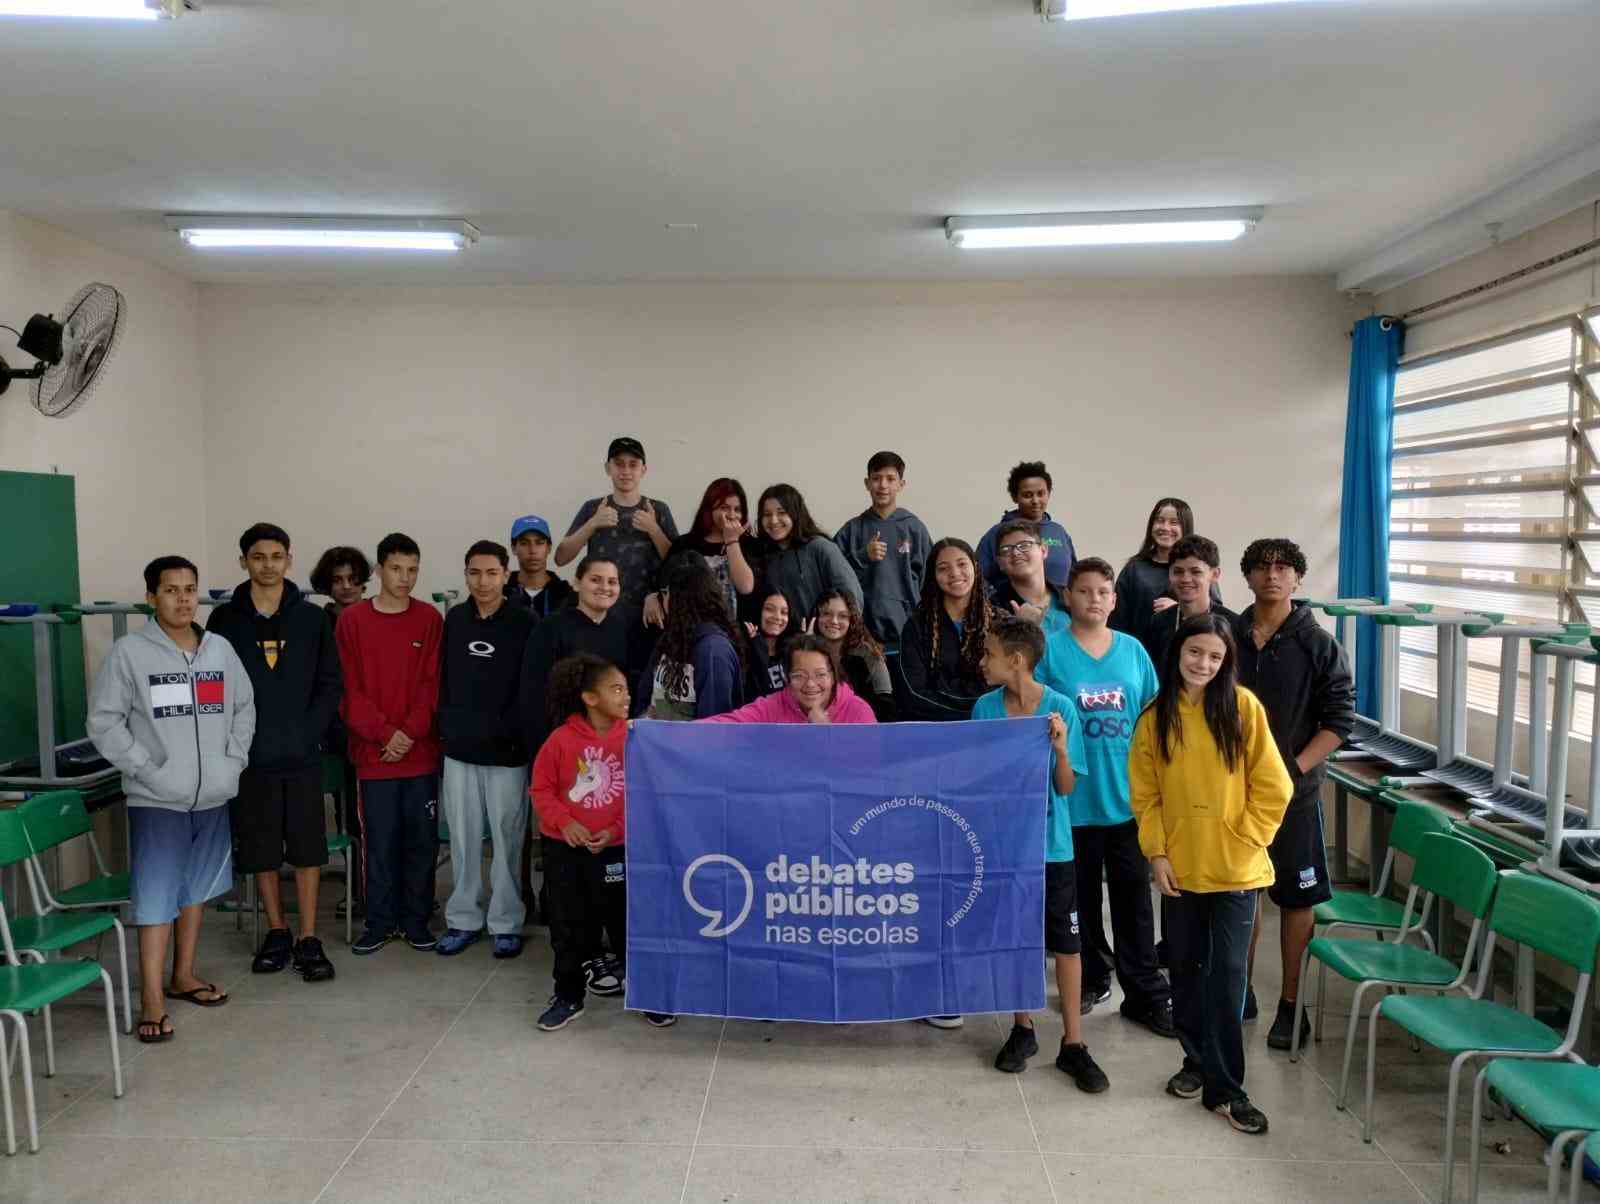 Grupo de jovens reunidos em uma sala de aula. A turma sorri para a foto e mostra a bandeira dos Debates Públicos nas Escolas